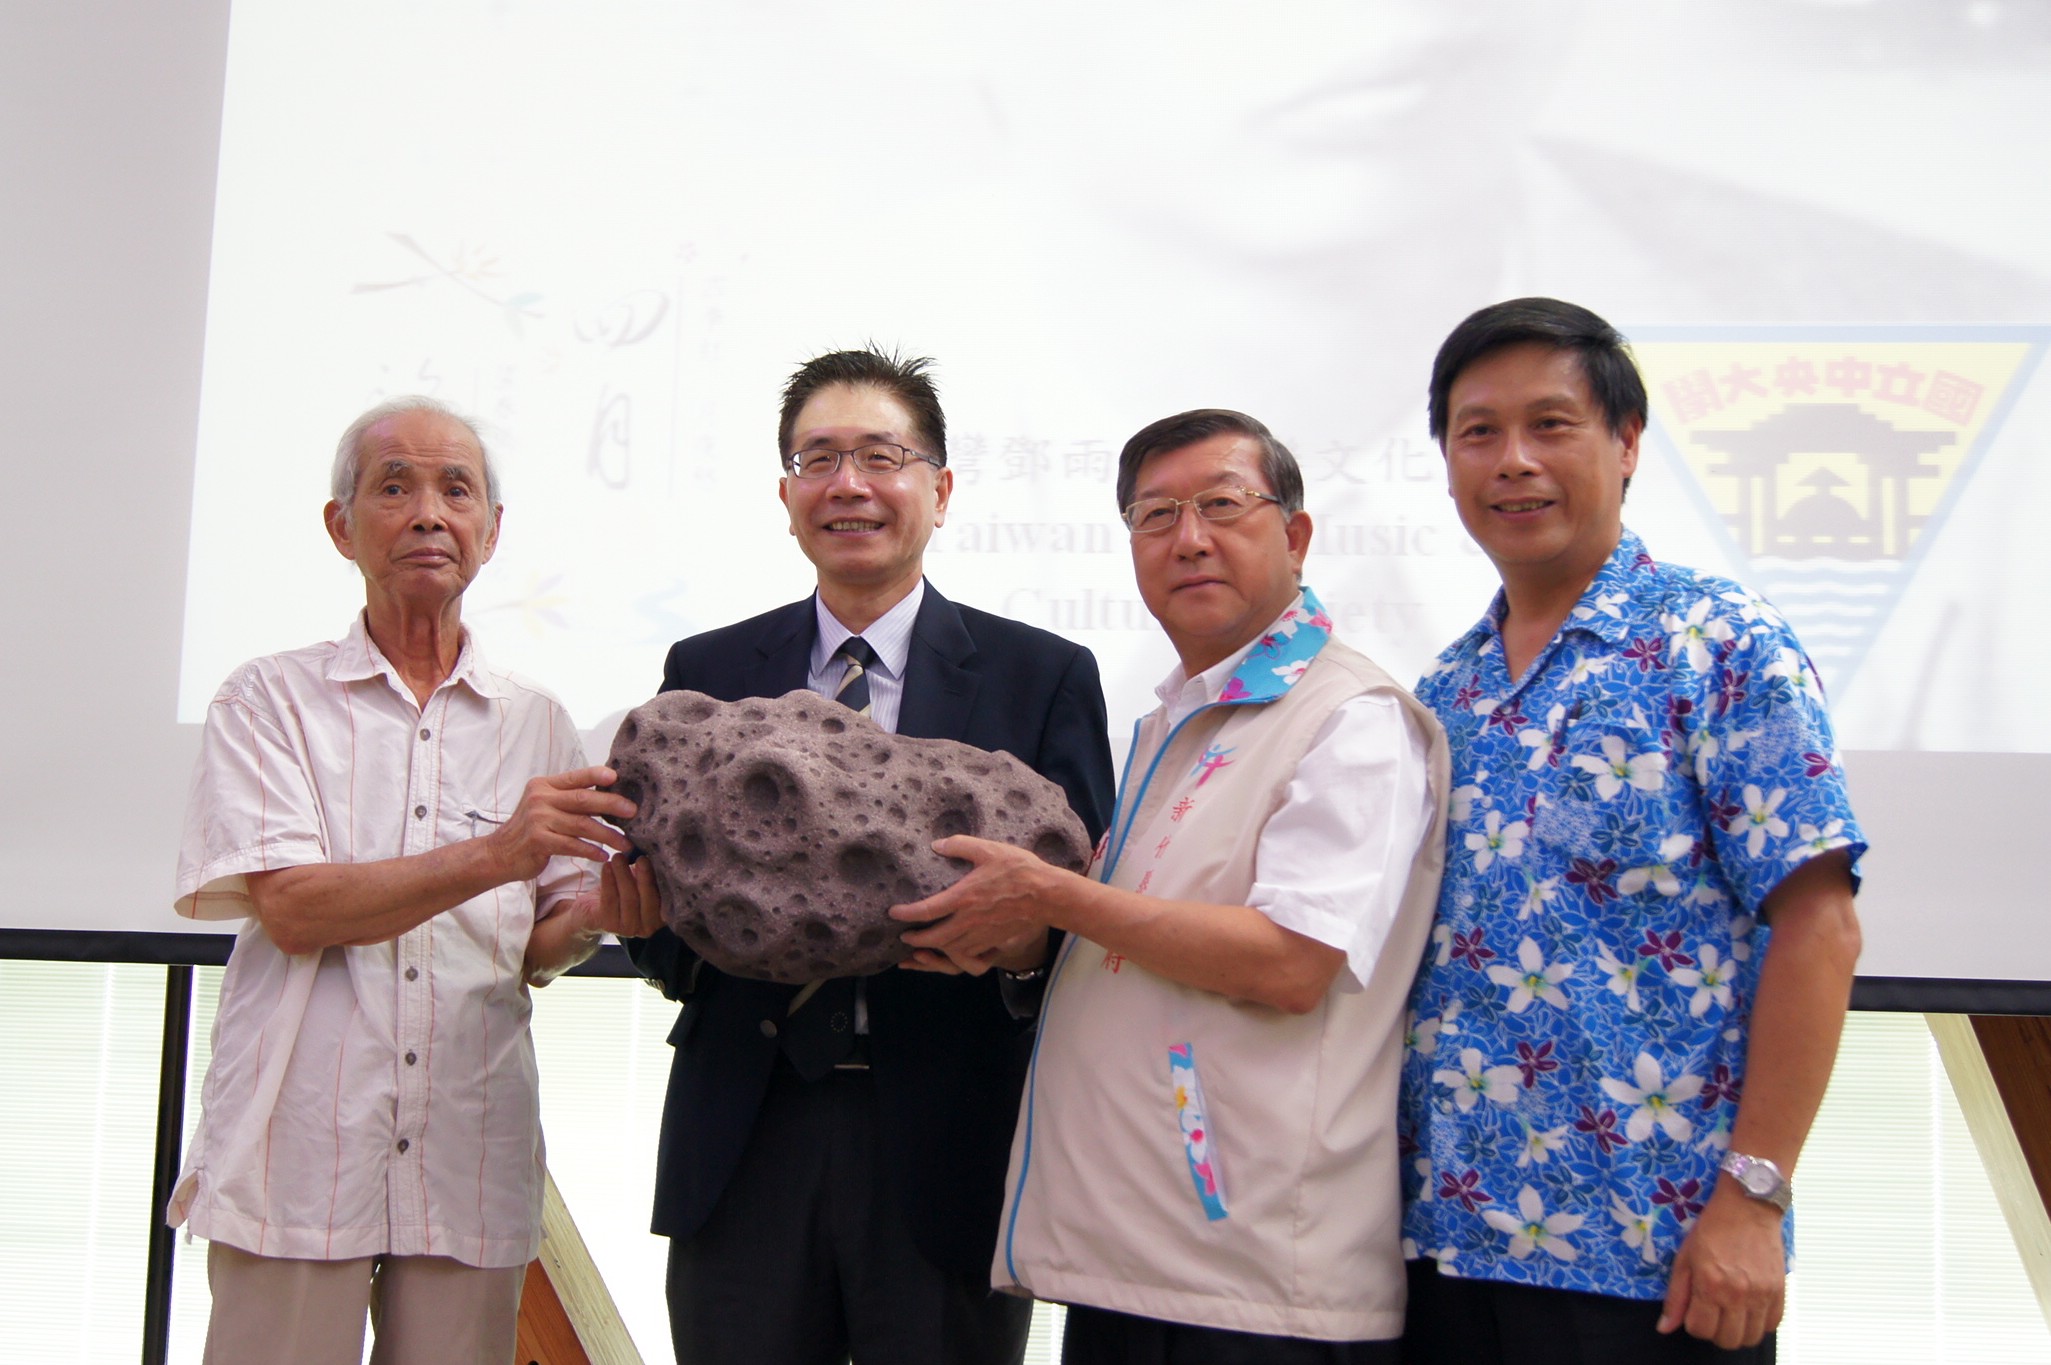 中央大學校長周景揚（左二）頒贈「鄧雨賢小行星」模型給新竹縣長邱鏡淳（右二）和鄧雨賢次子鄧仁侃先生（左一），以感念這位台灣民謠先驅。陳如枝攝